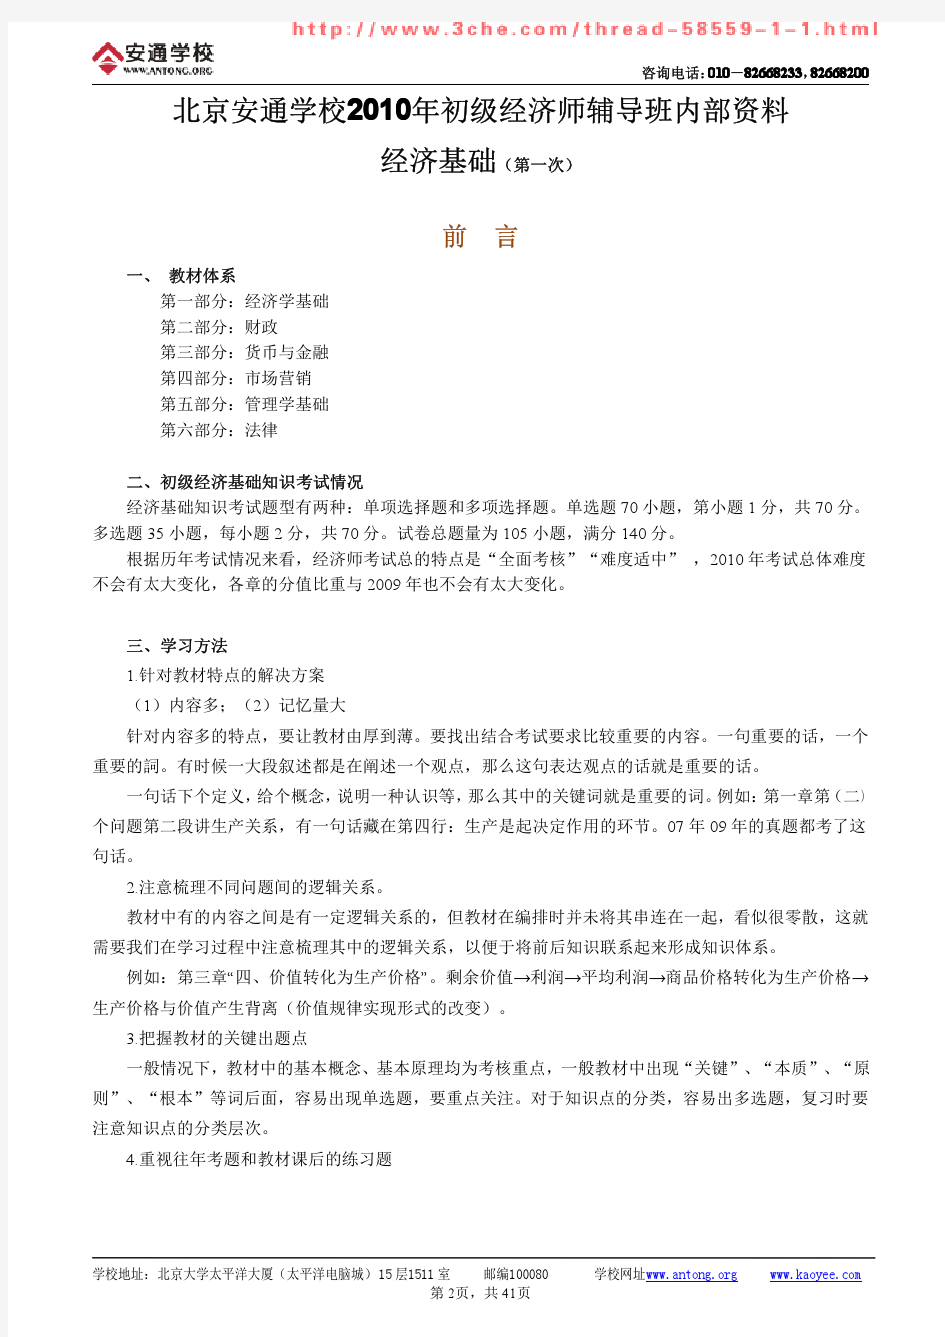 初级经济师培训讲义(共40页)